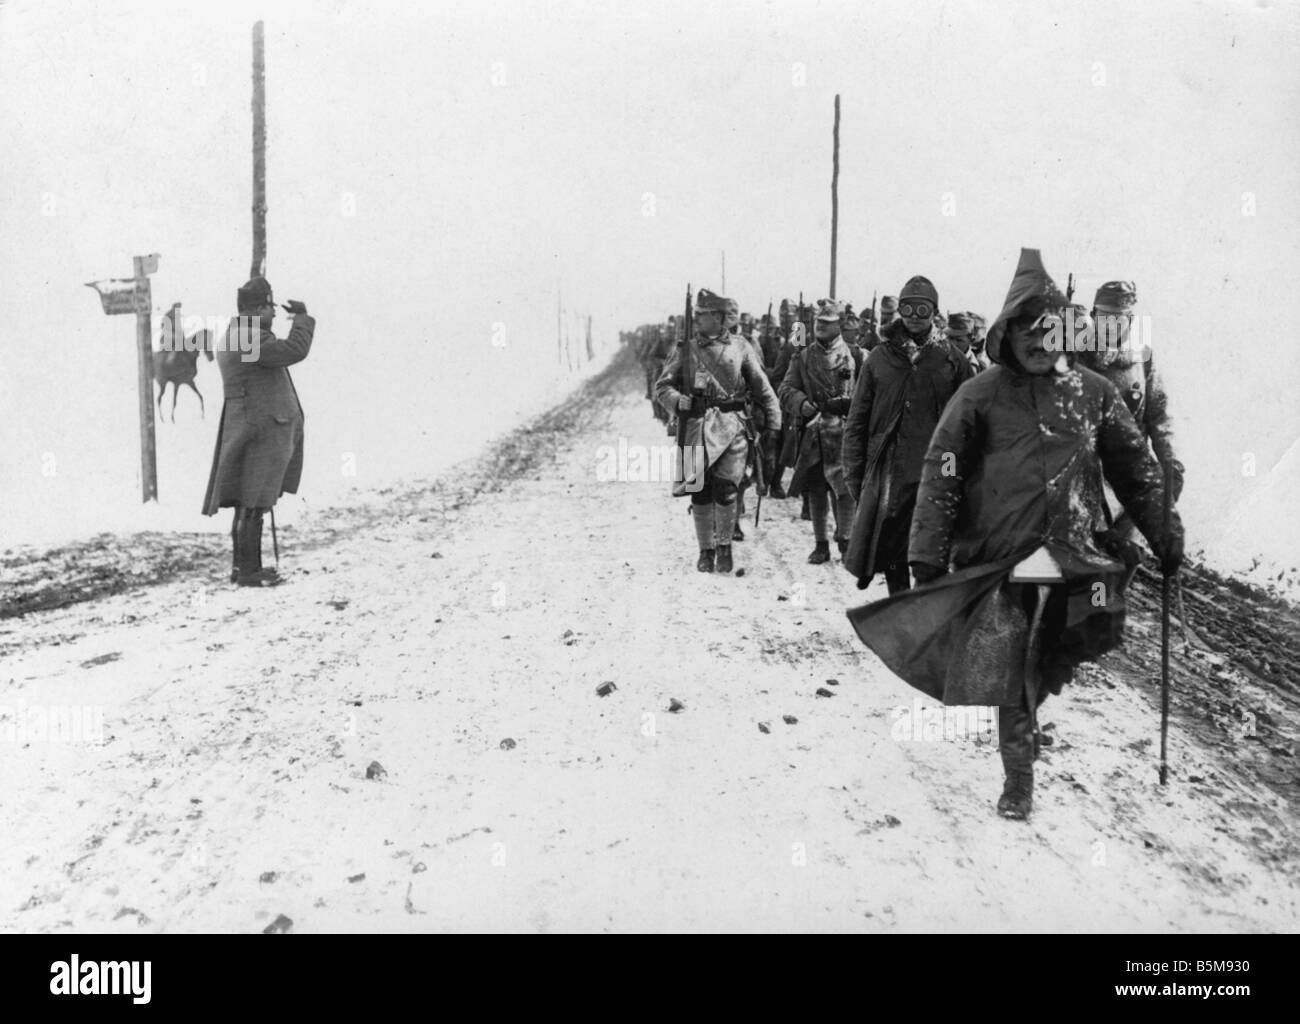 Historique 1915 la première guerre mondiale, Front de l'Est avance Austrain en Pologne russe Hiver 1915 16 photos Banque D'Images